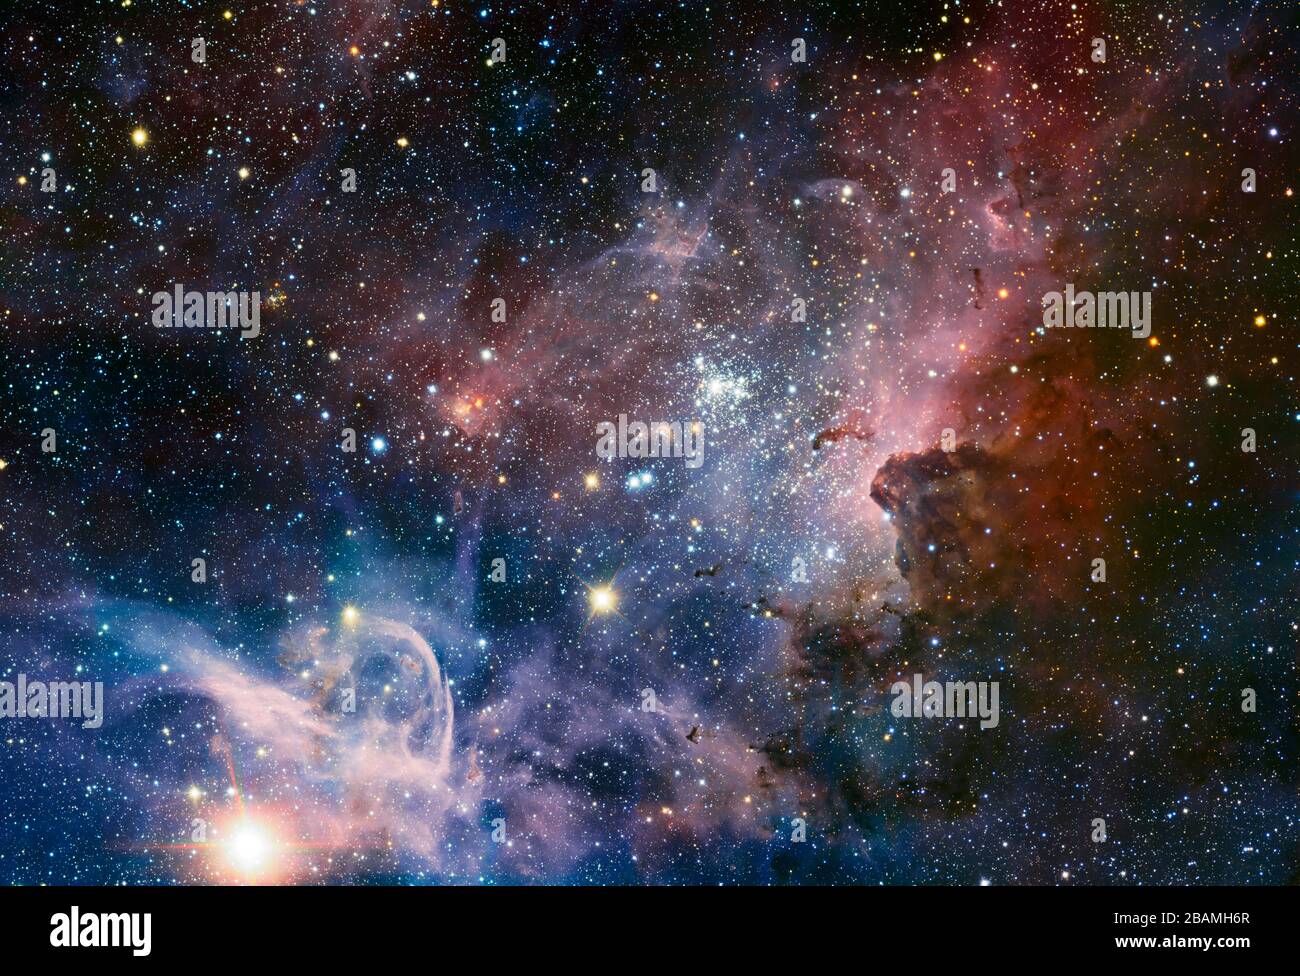 "Englisch: Dieses breite Panorama des Carina Nebels, einer Region massiver Sternentstehung am Südhimmel, wurde mit der HAWK-I-Kamera auf dem very Large Telescope von ESO in Infrarotlicht aufgenommen. Viele bisher verborgene Merkmale, die über eine spektakuläre Himmelslandschaft aus Gas, Staub und jungen Sternen verstreut sind, sind entstanden. Einige dieser Funktionen wurden in Commons kommentiert. Trumpler 16 (mit Anmerkungen versehen) ist ein offener Sternhaufen, der die leuchtende, massive blaue Variable Eta Carinae enthält, einen der hellsten Sterne der Galaxie, möglicherweise bis zu 120 Mal so viel wie die Sonnenmasse, und das Licht von ausstrahlt Stockfoto